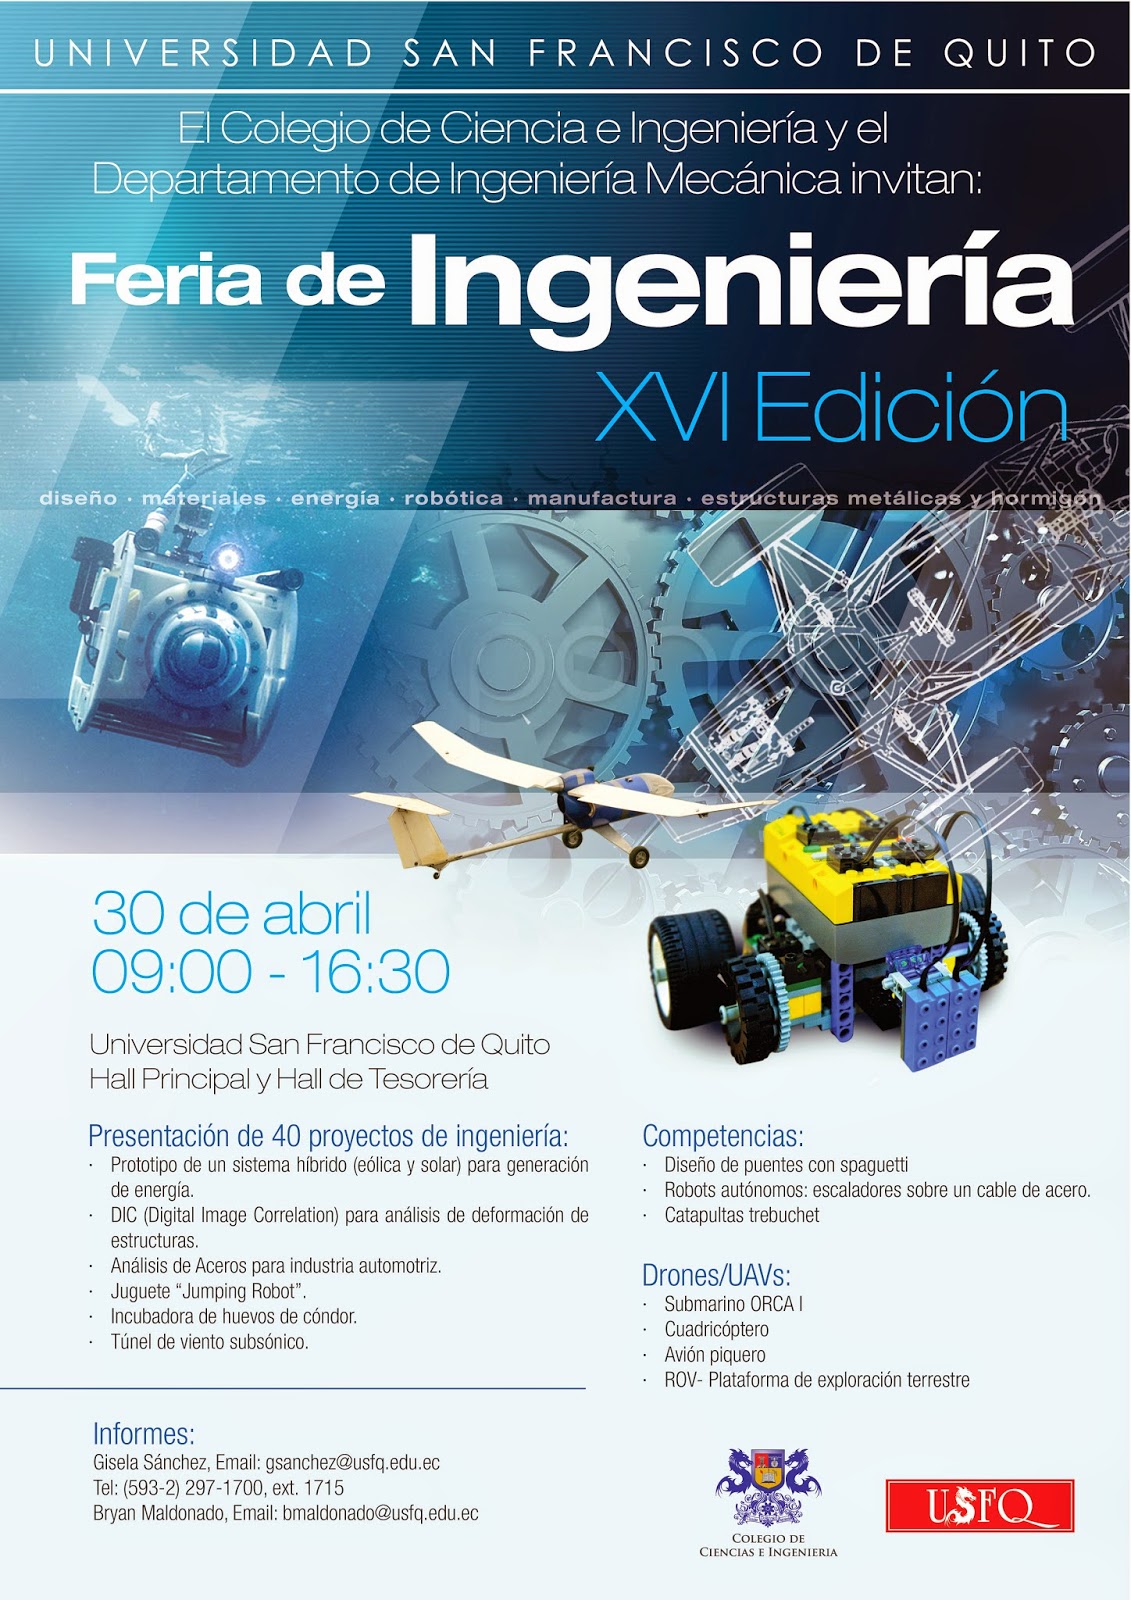 El Colegio de Ciencias e Ingeniería y el departamento de Ingeniería mecánica invitan la Feria de Ingeniería XVI Edición, 30 de abril 